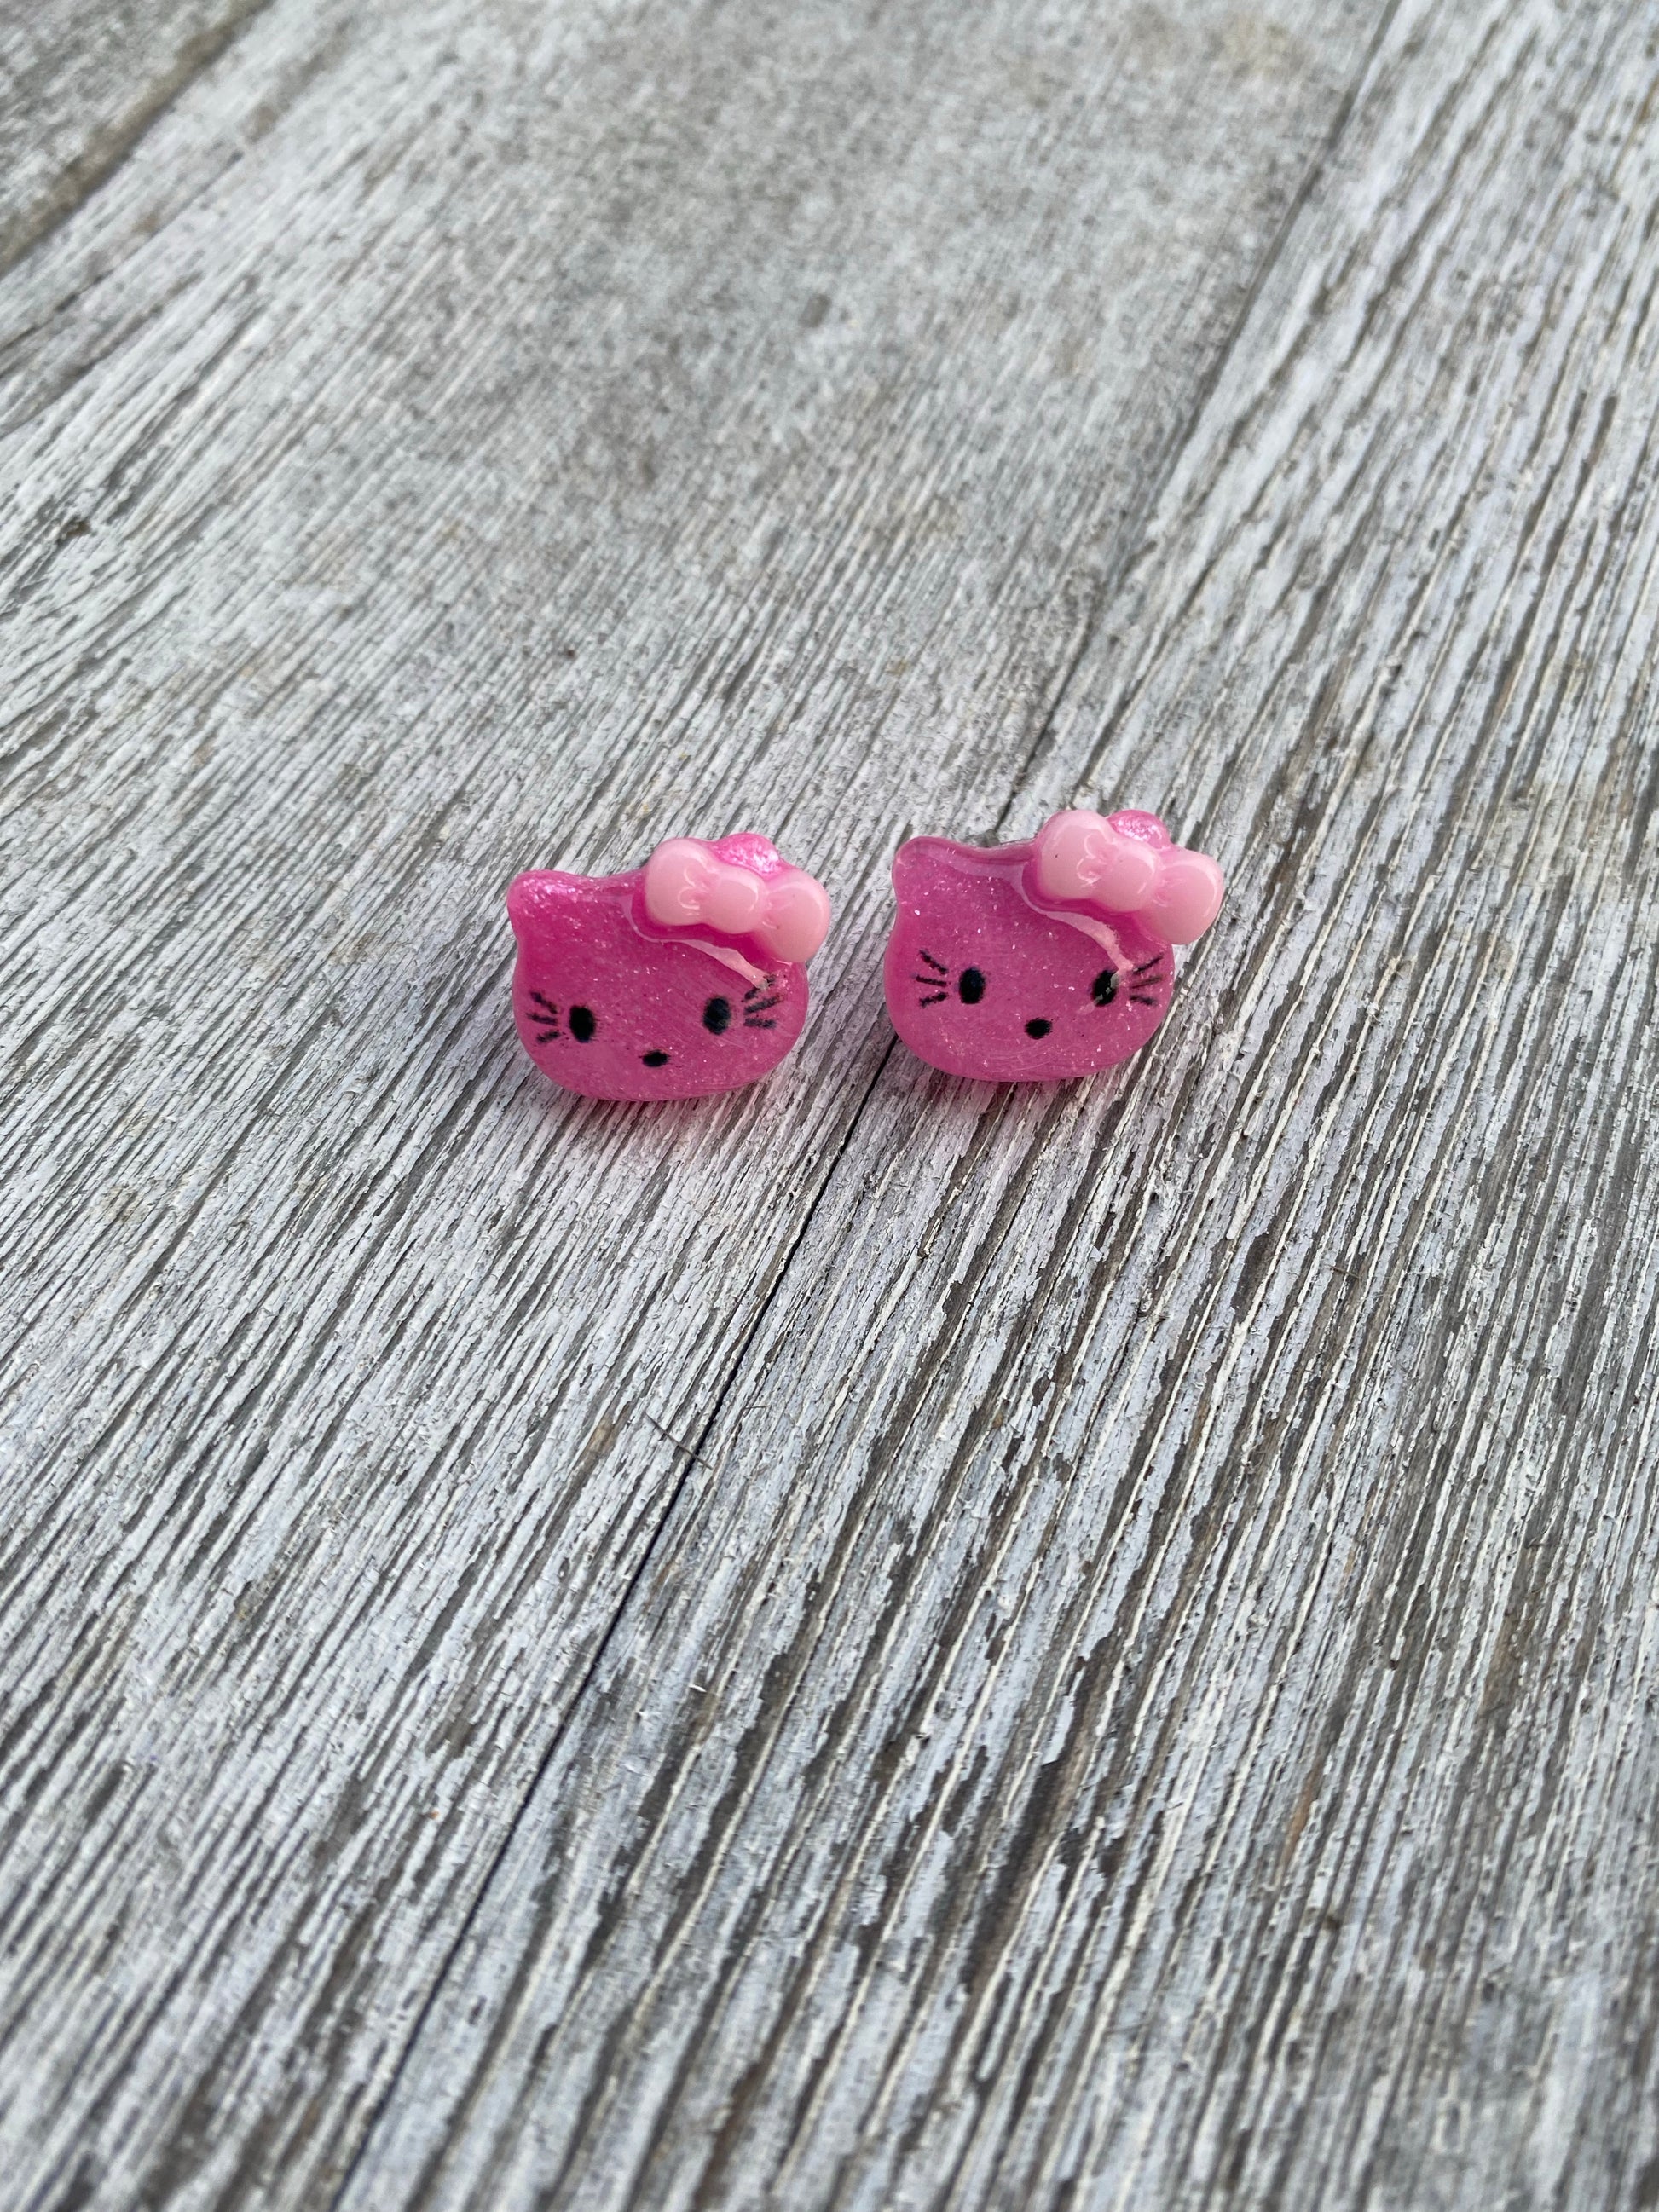 Hello Kitty Little Girls Stud Earrings Gifts